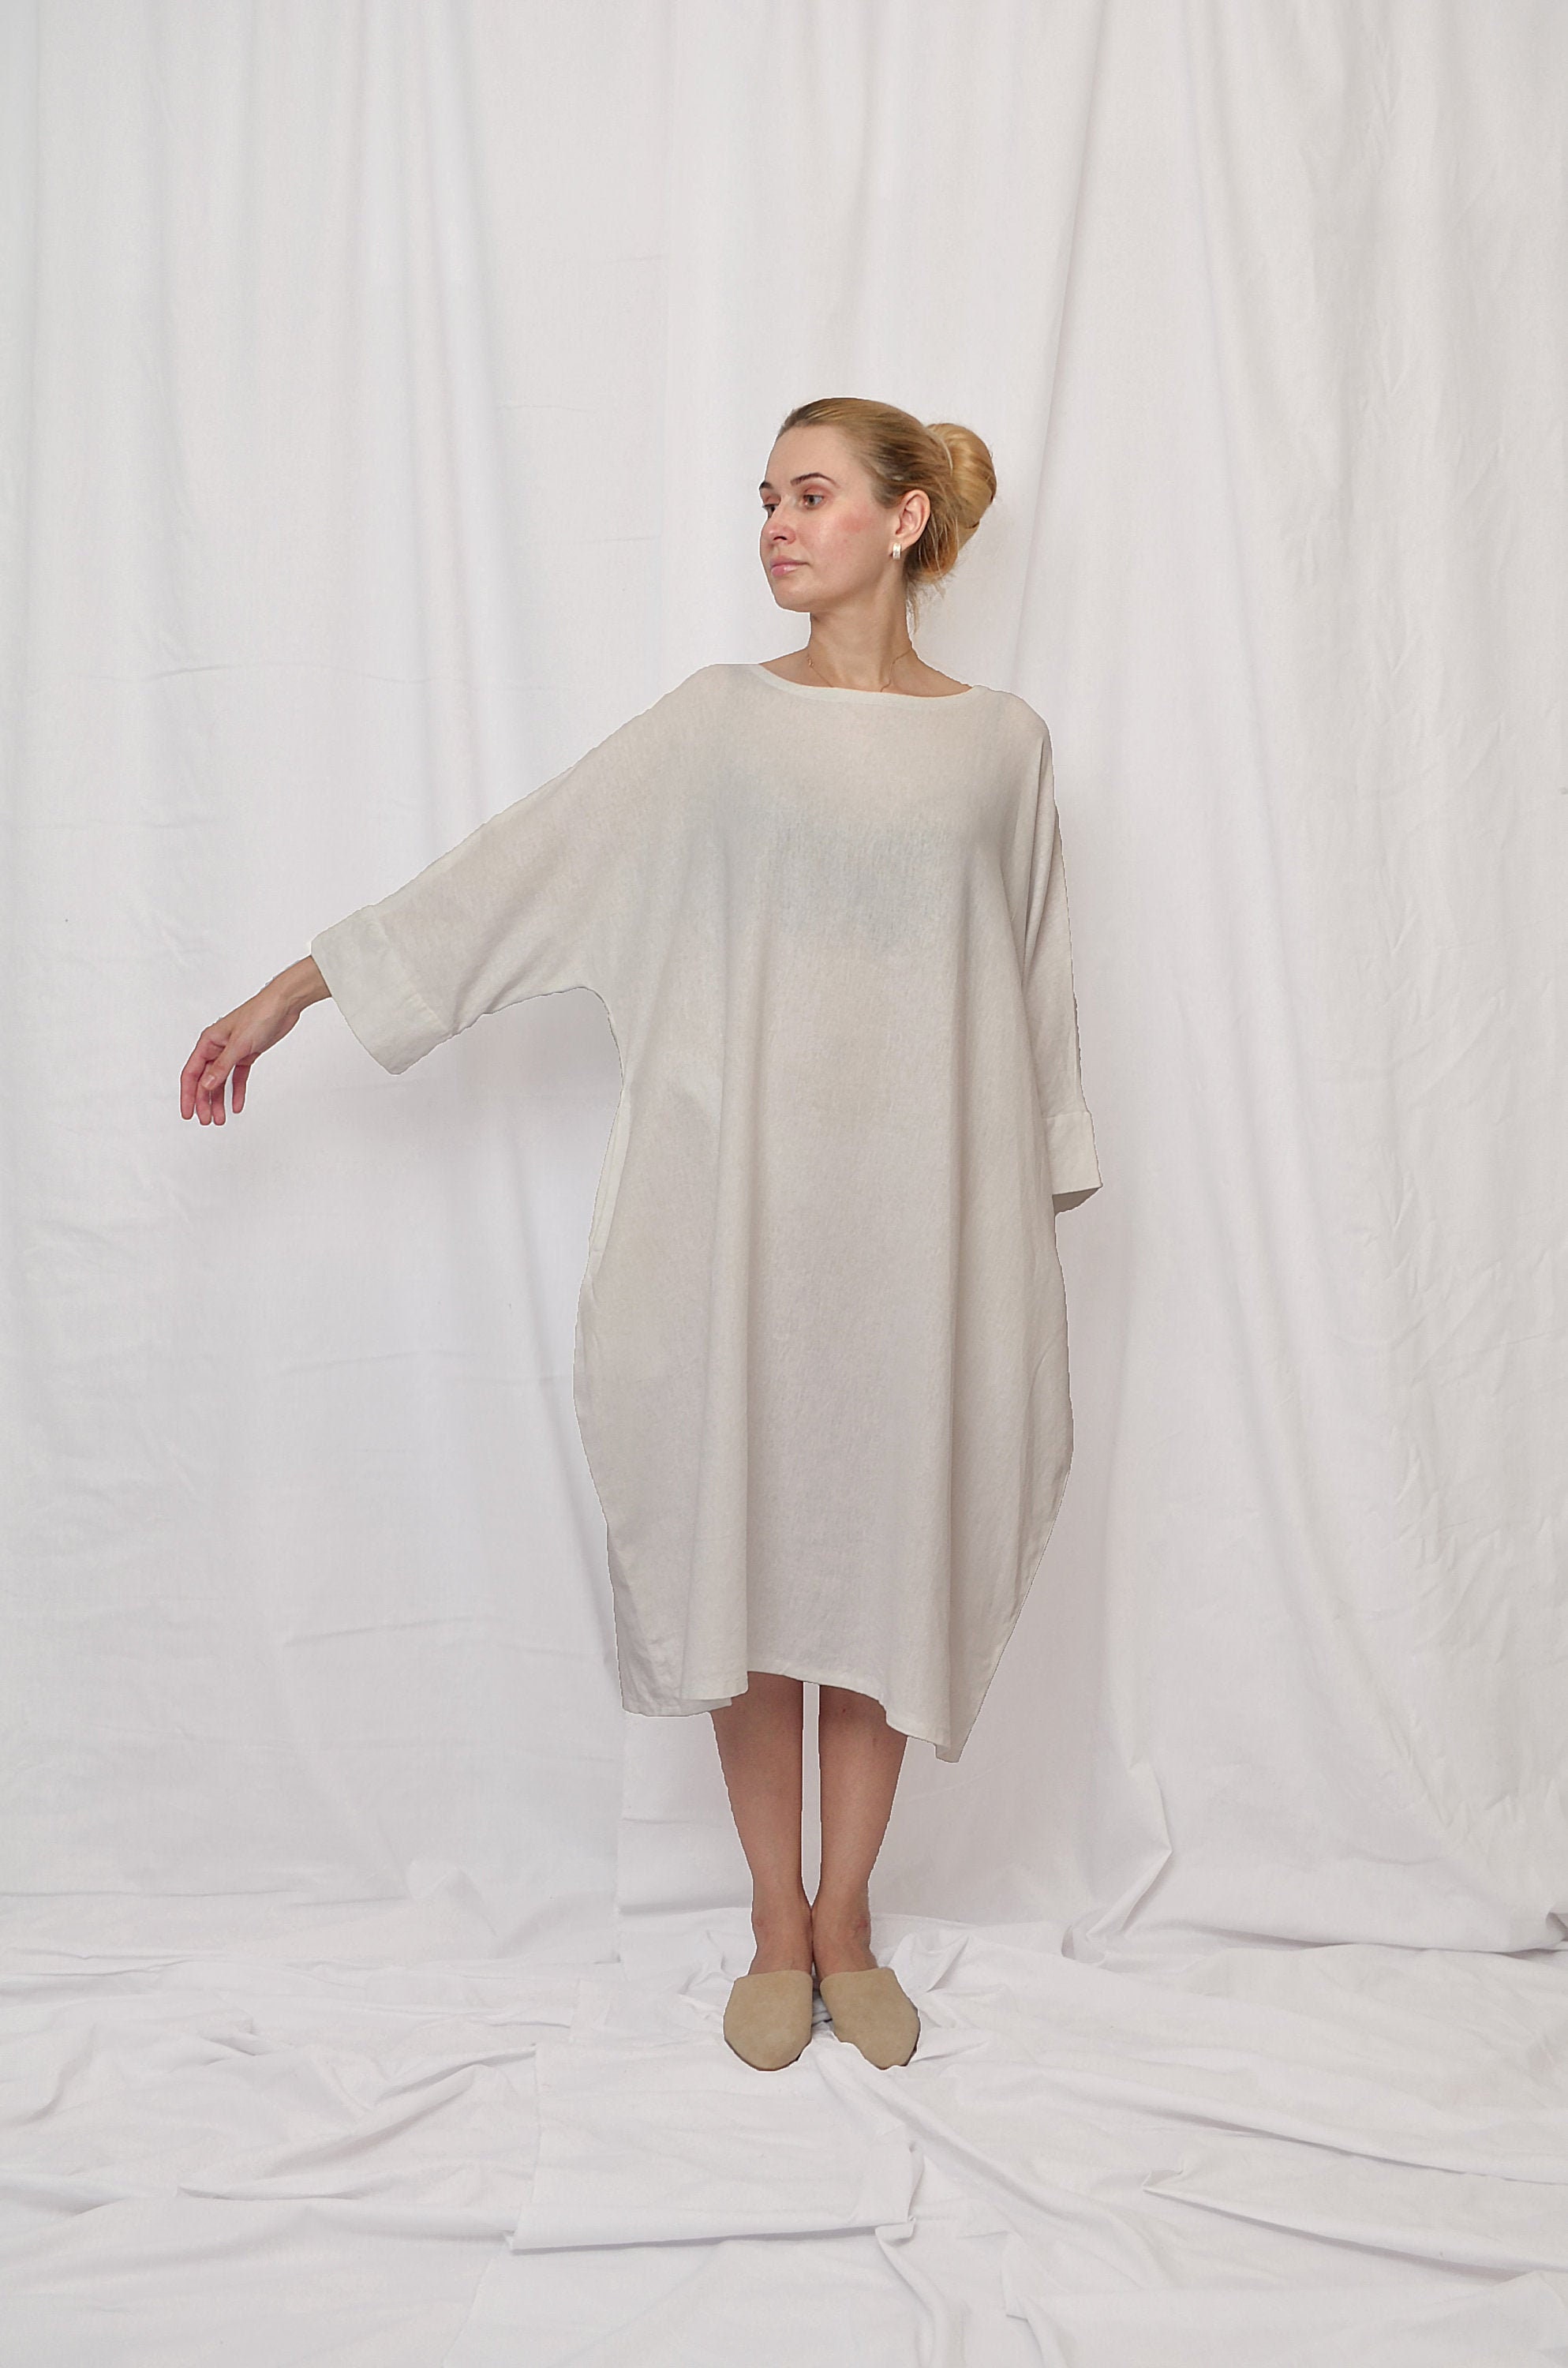 White Dress Women Linen Dresses for Women Plus Size Linen - Etsy